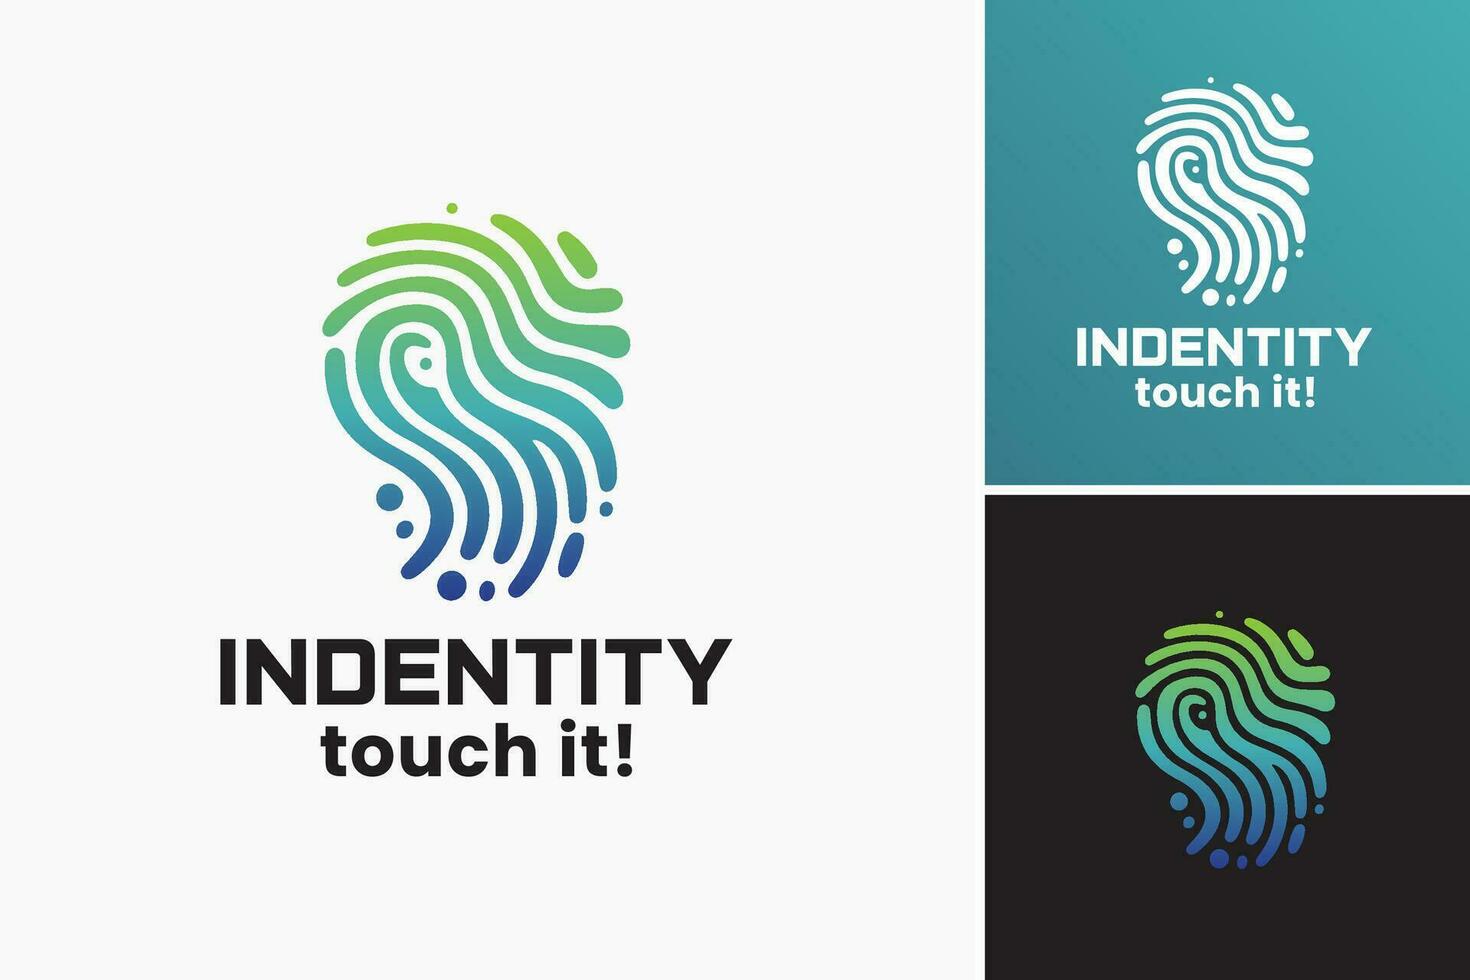 identità toccare logo è un' versatile design risorsa quello può essere Usato per creare loghi e marca identità con un' distintivo e tattile tatto. vettore